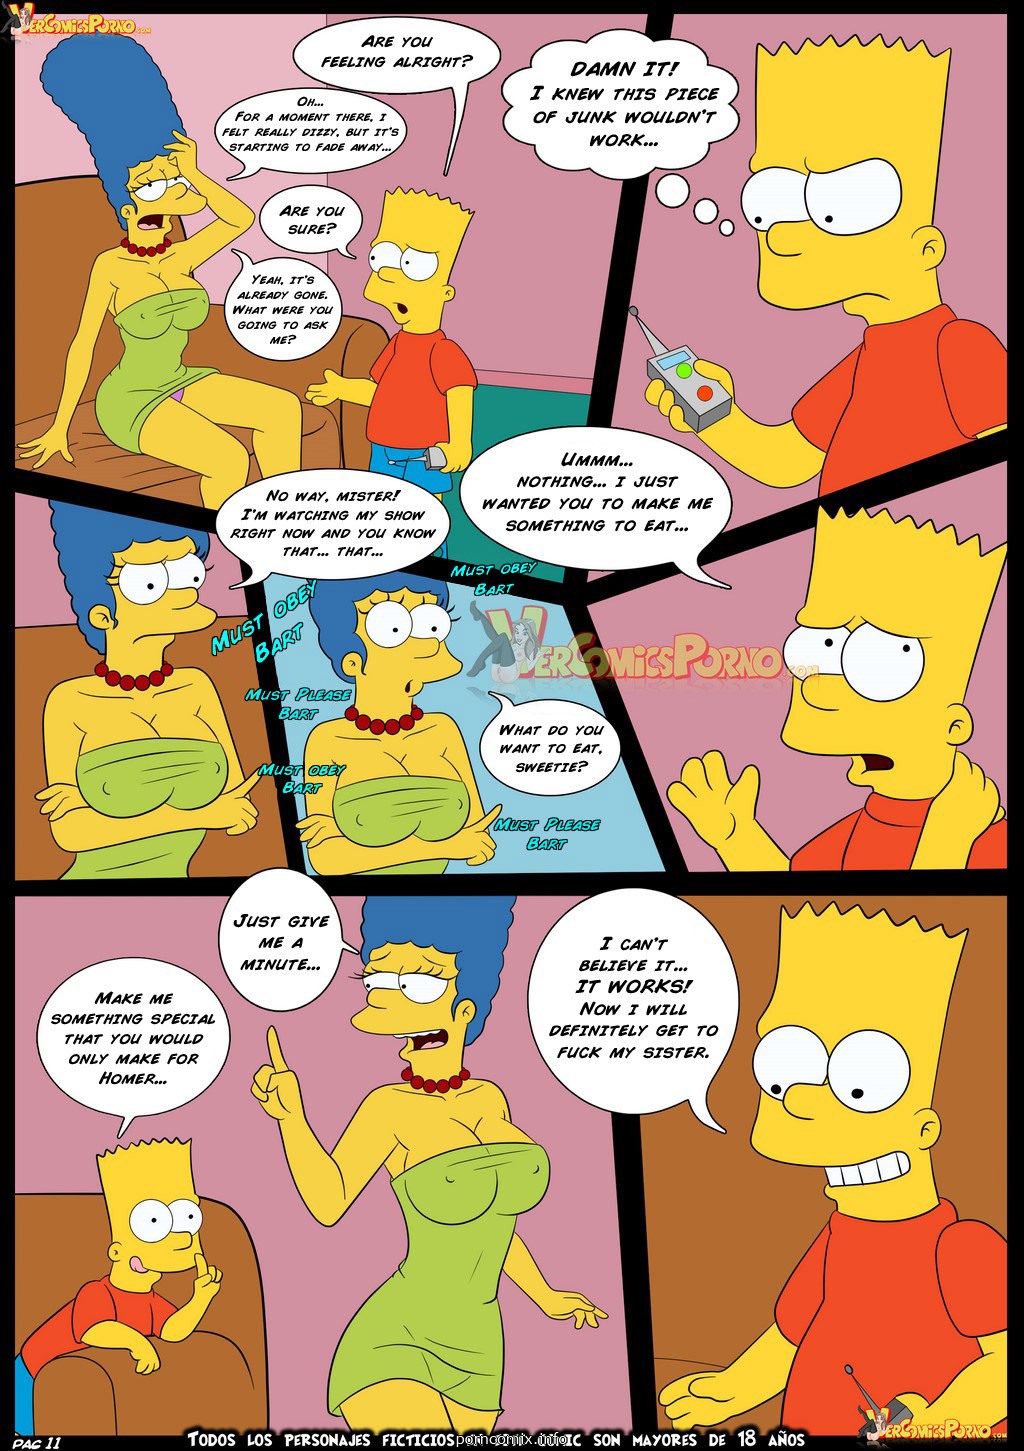 Порно Комиксы Симпсоны Конкурс Часть 4